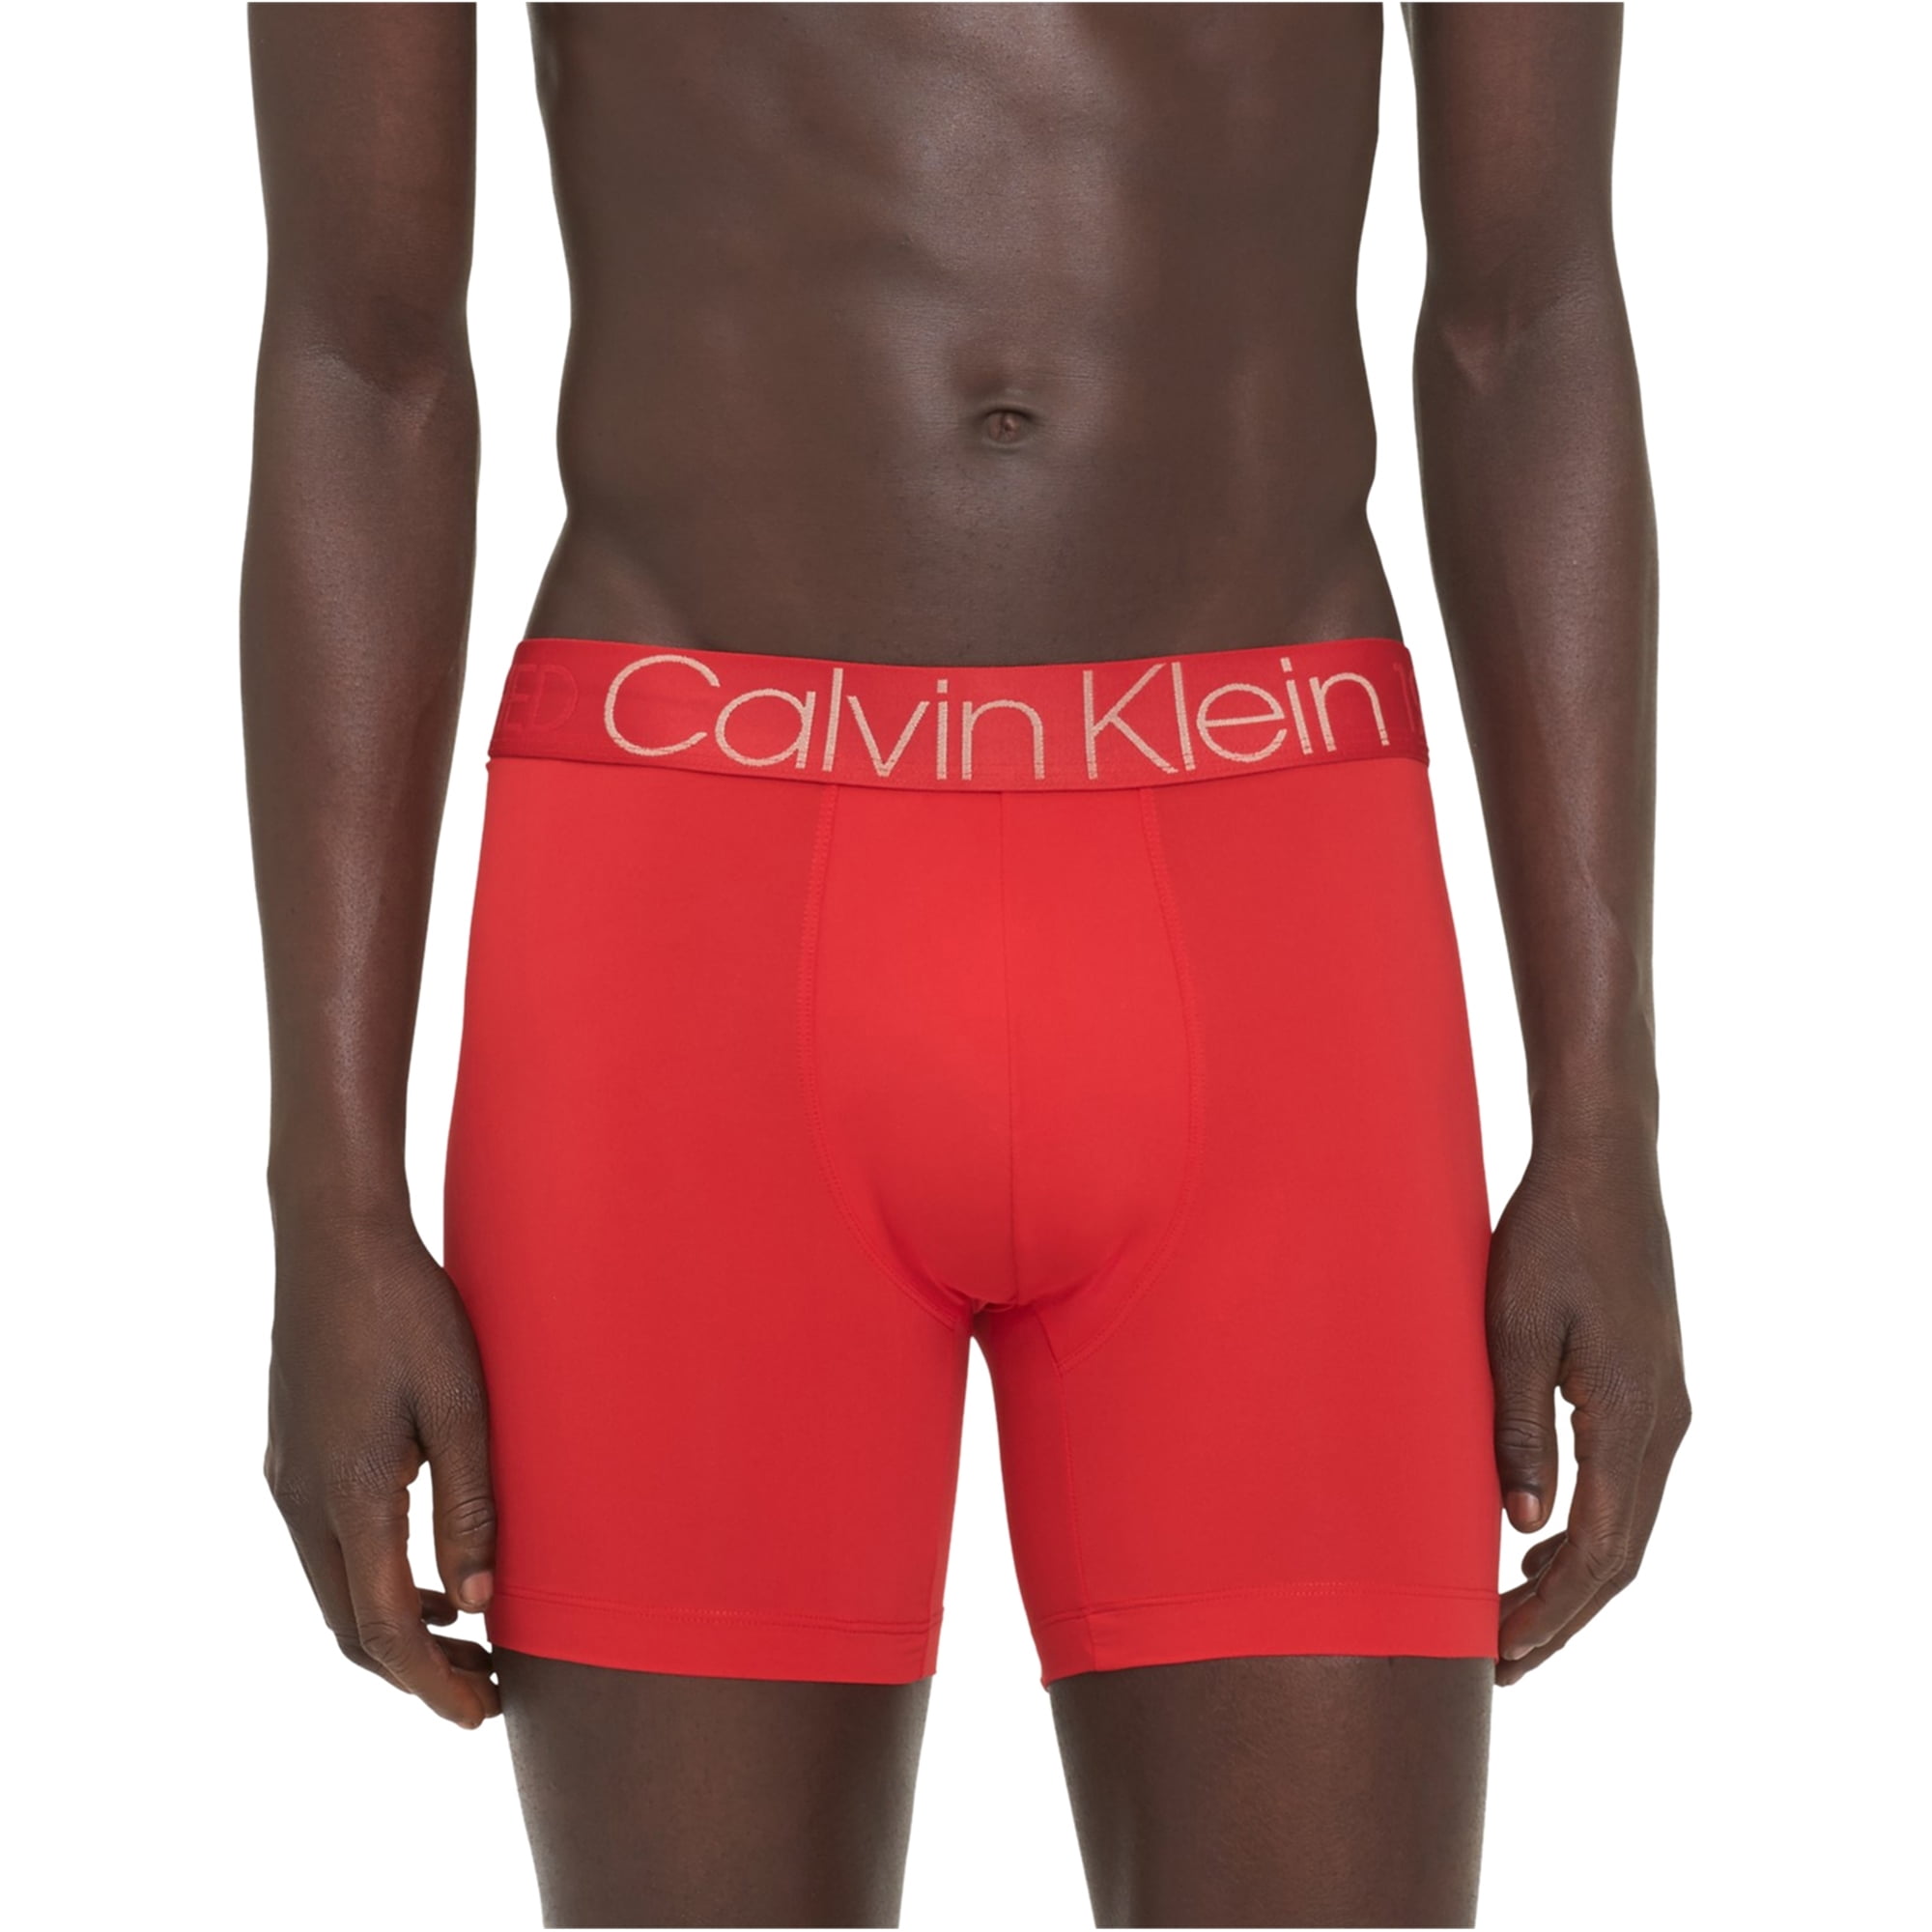 Calvin Klein - Calvin Klein Mens Evolution Microfiber Underwear Boxer